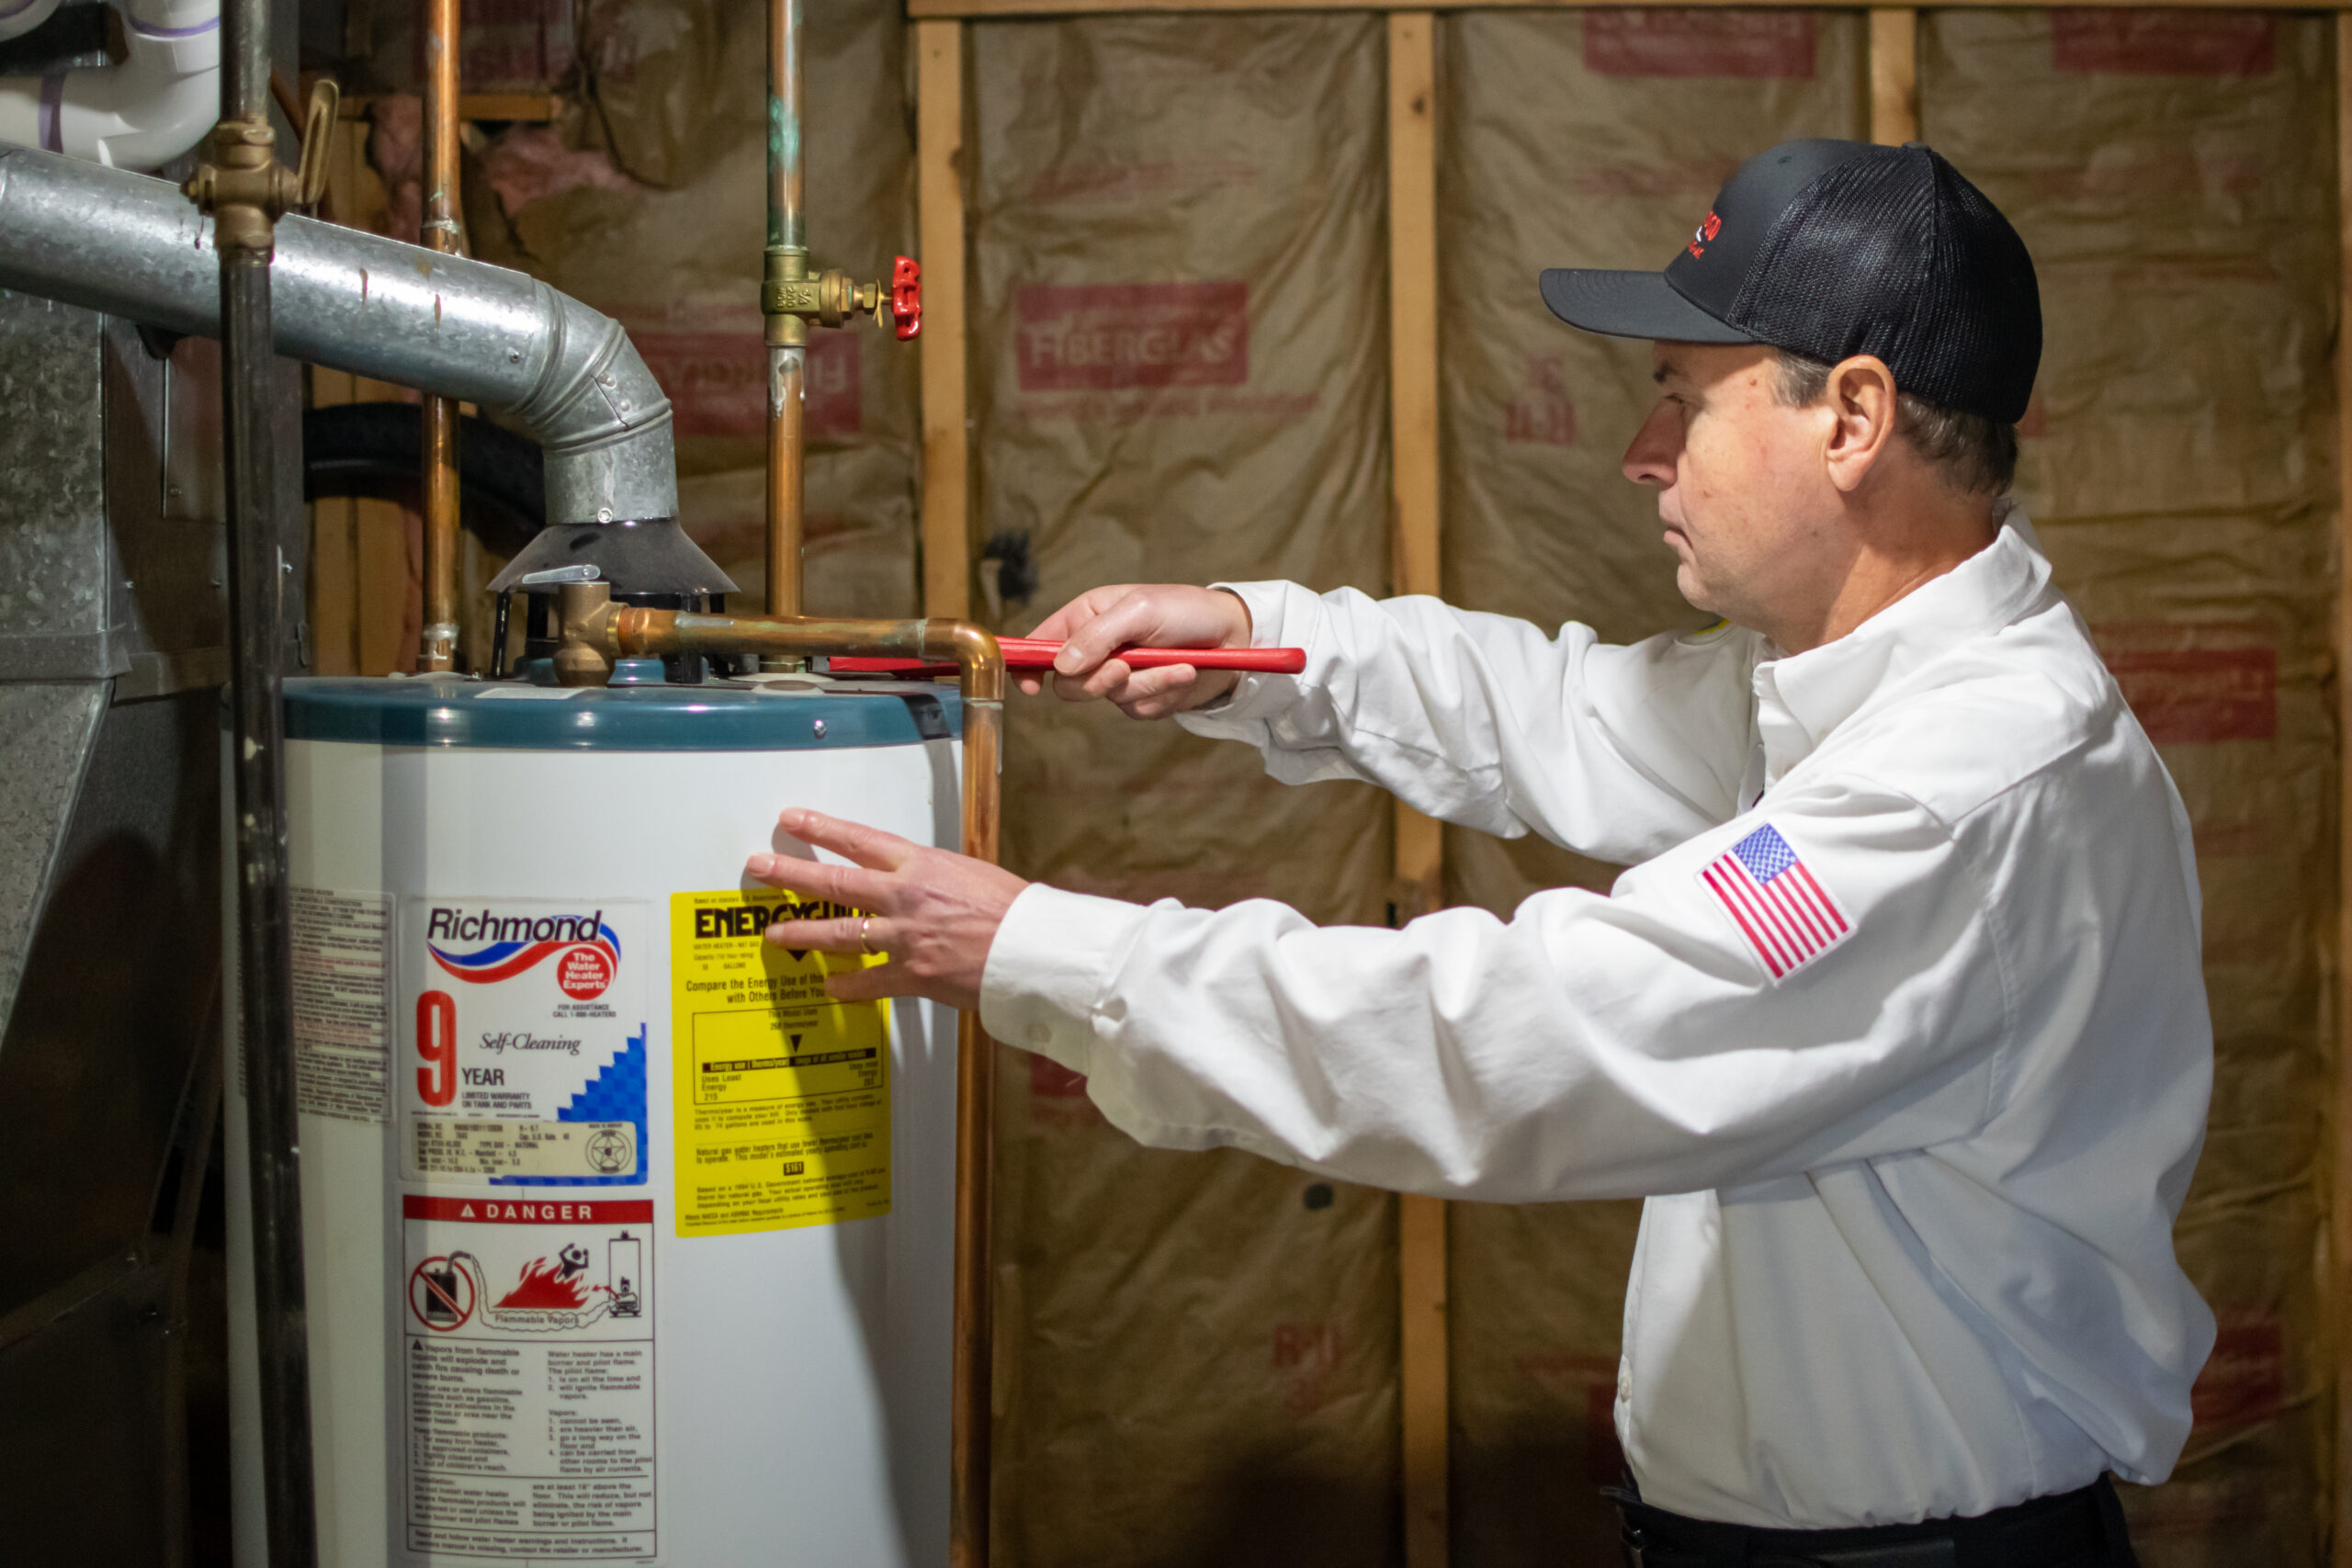 Vredevoogd technician repairing a water heater in a Michigan home